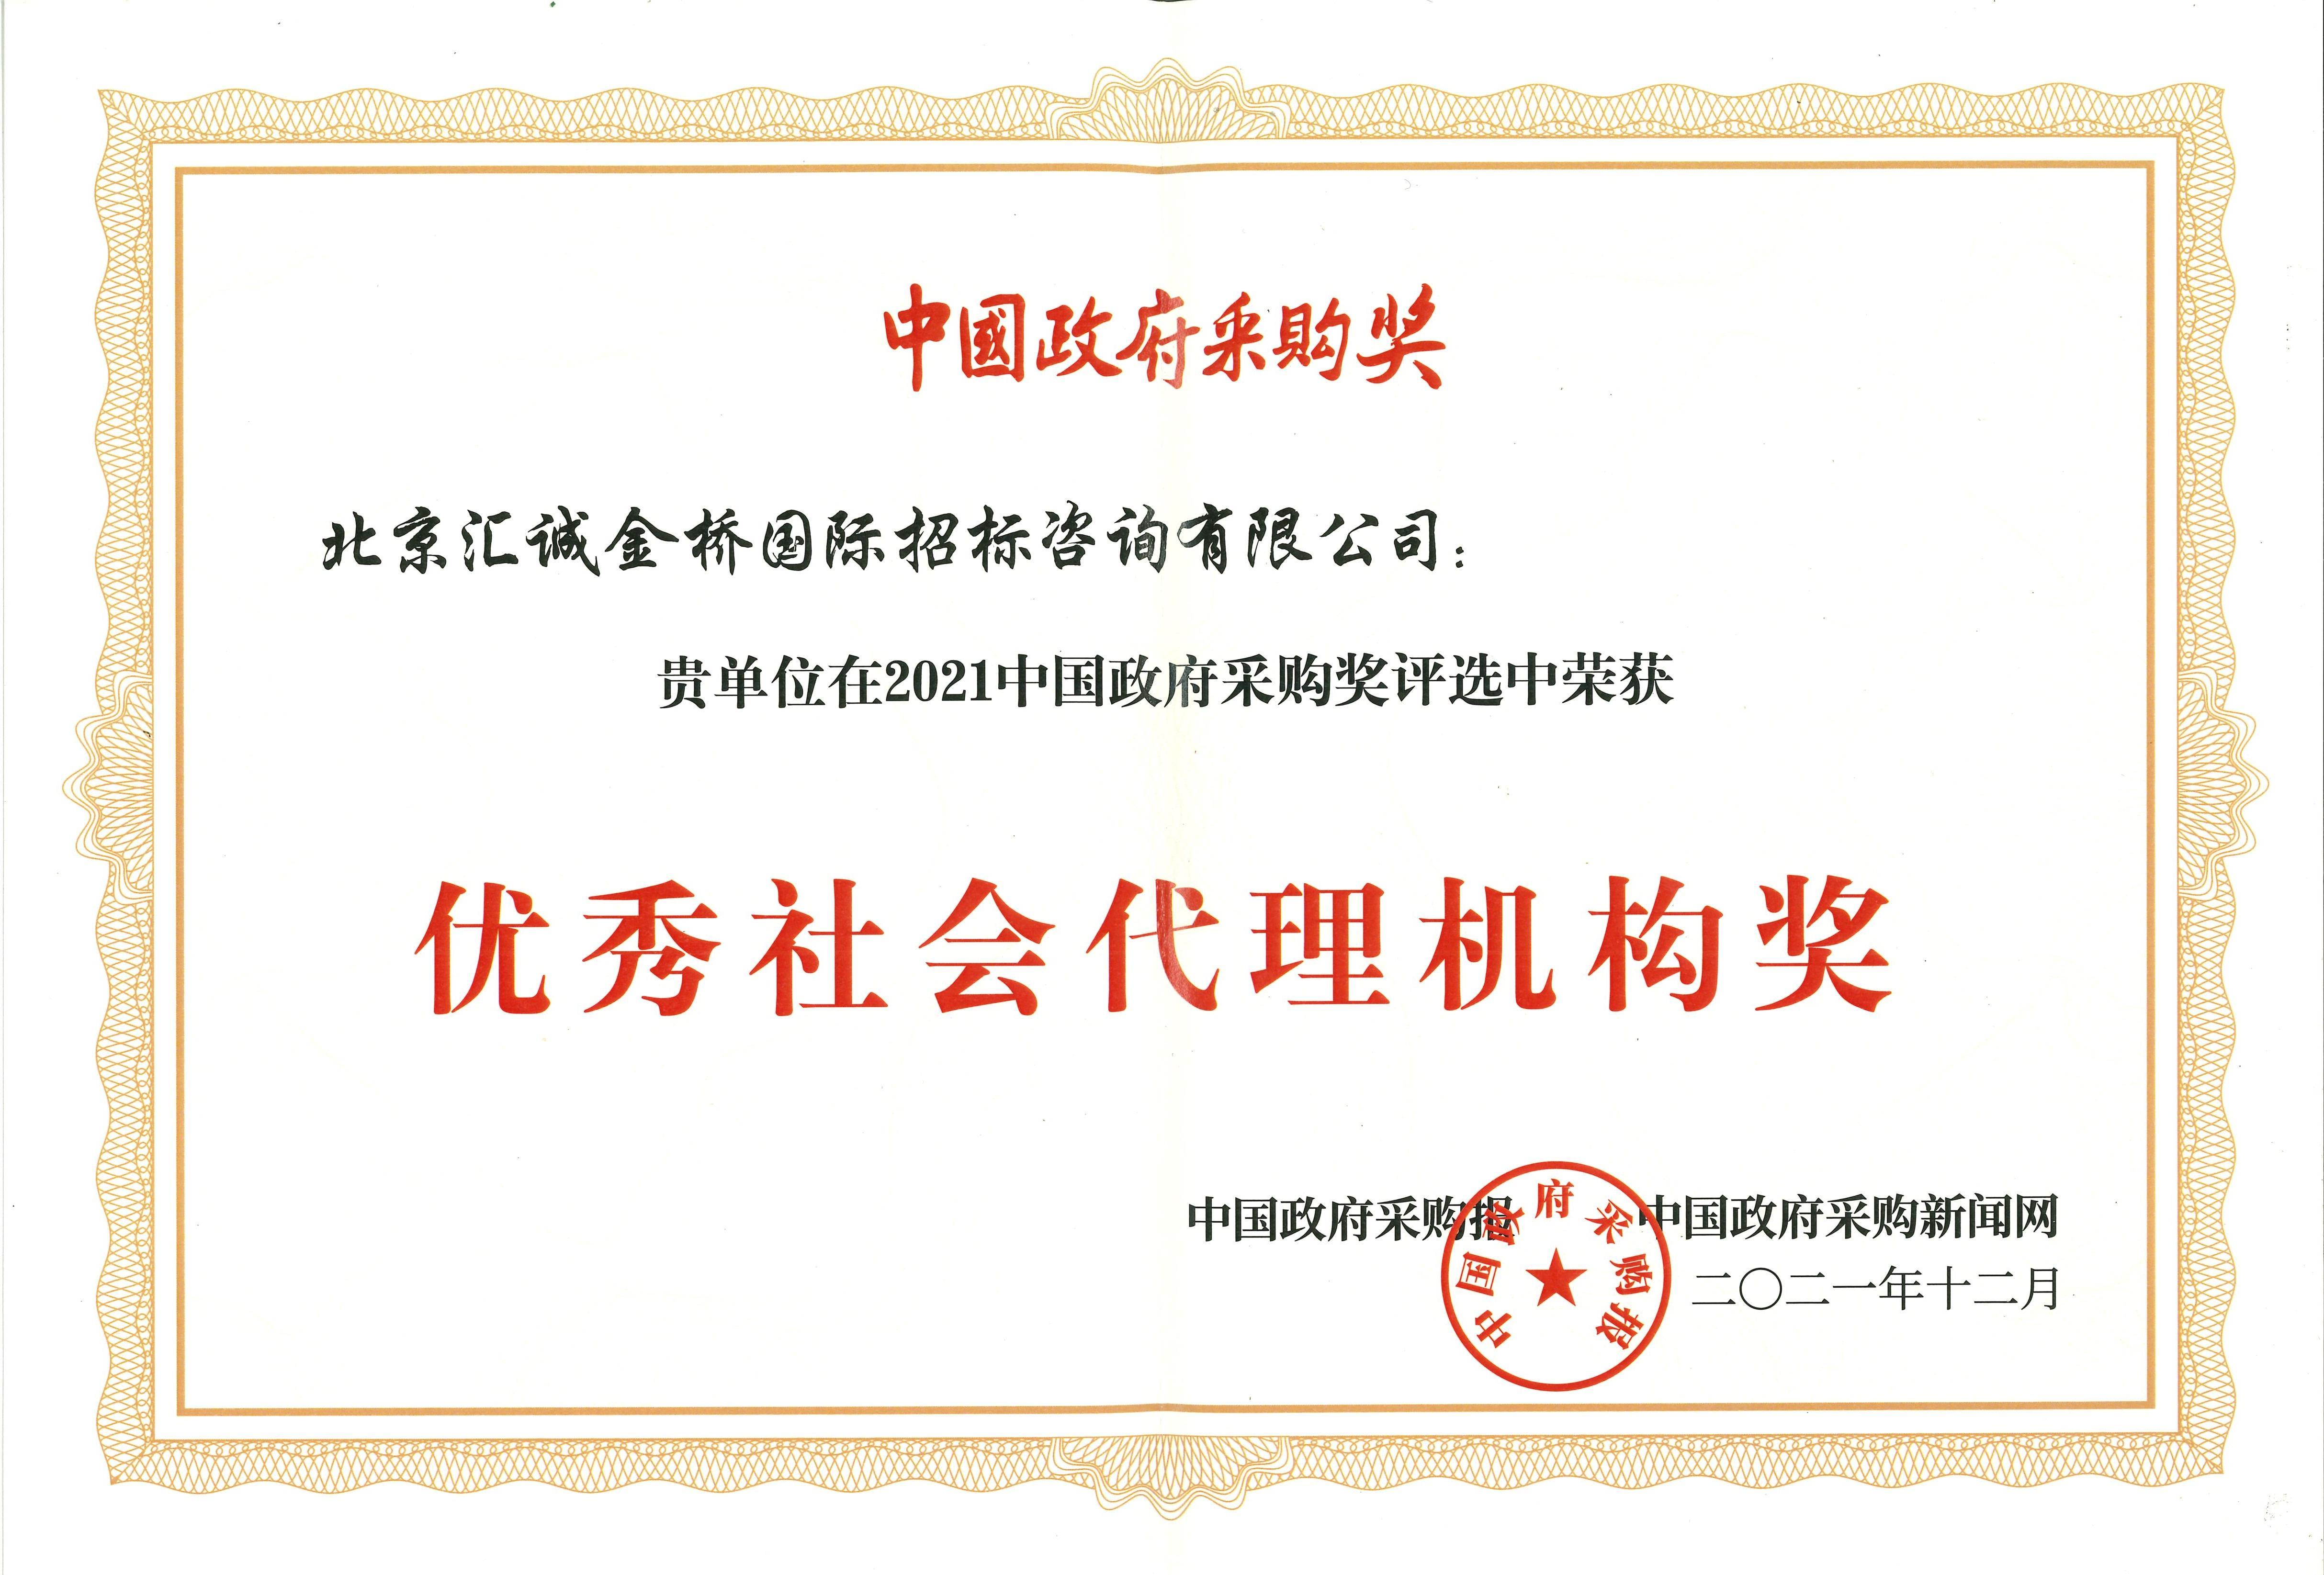 汇诚金桥在2021中国政府采购奖评选中荣获“优秀社会代理机构奖”